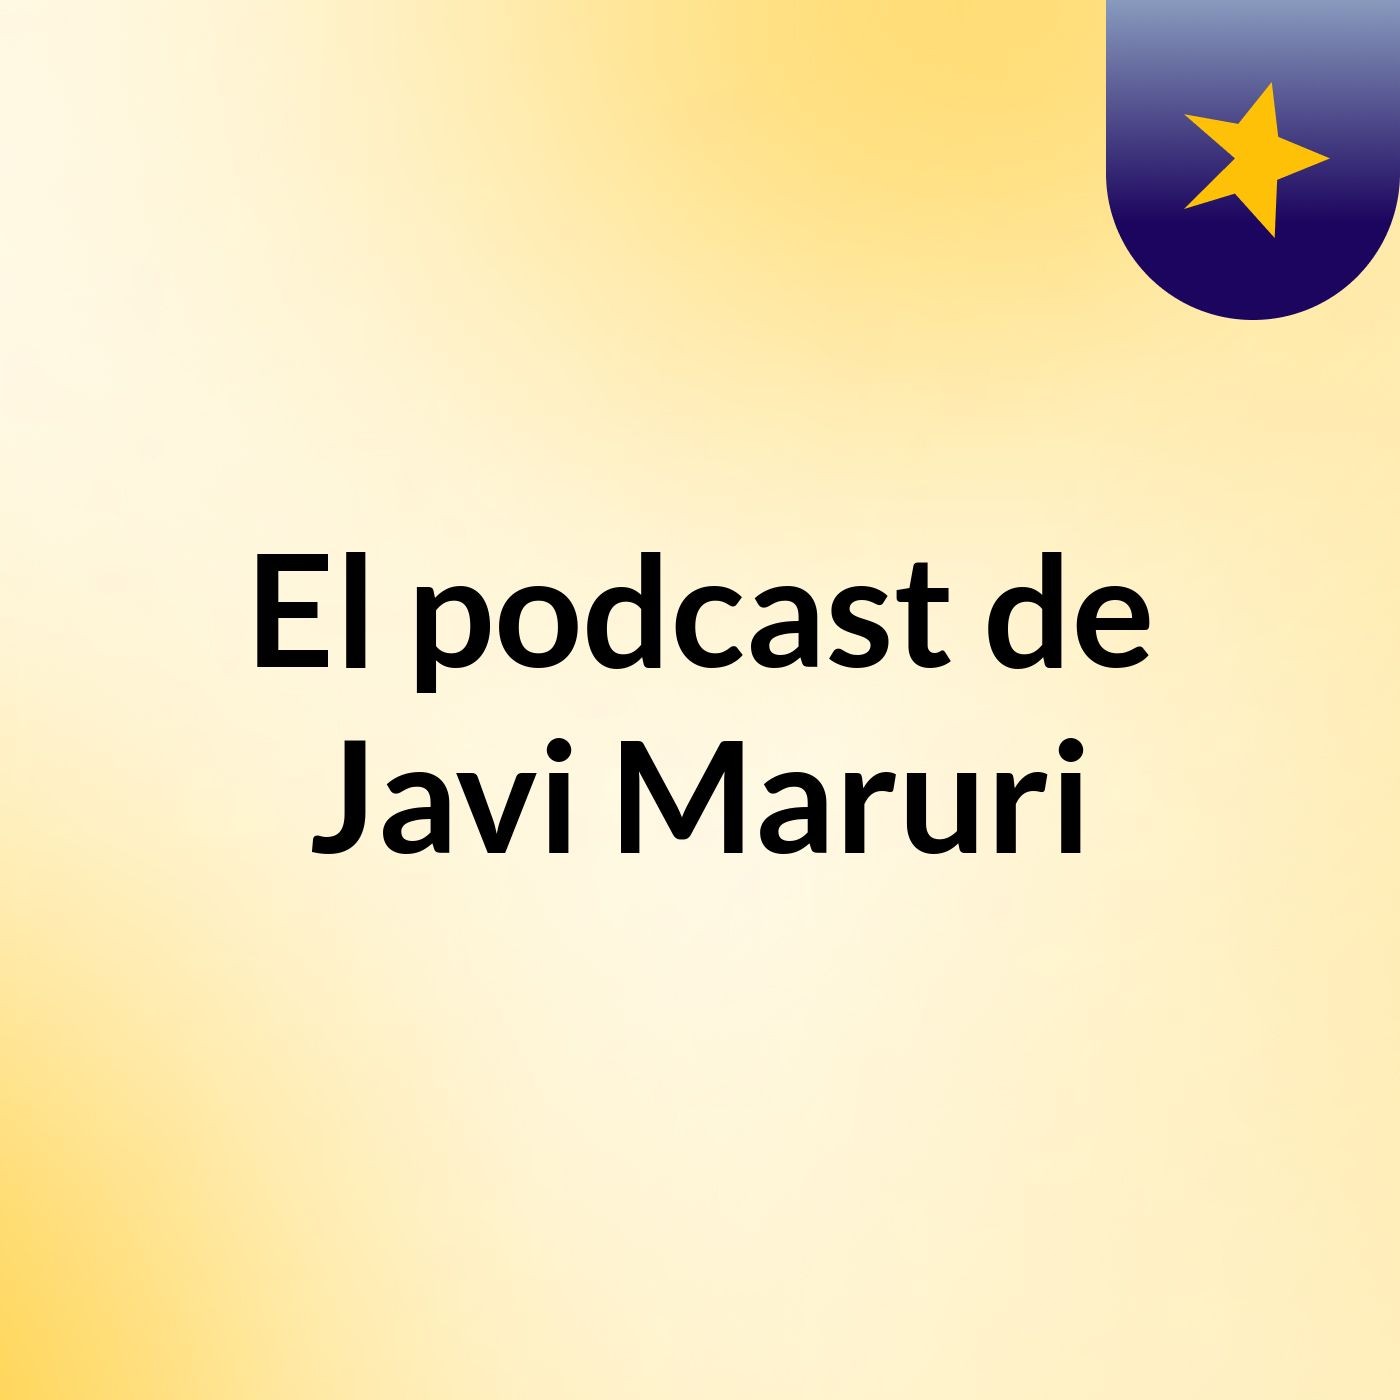 El podcast de Javi Maruri